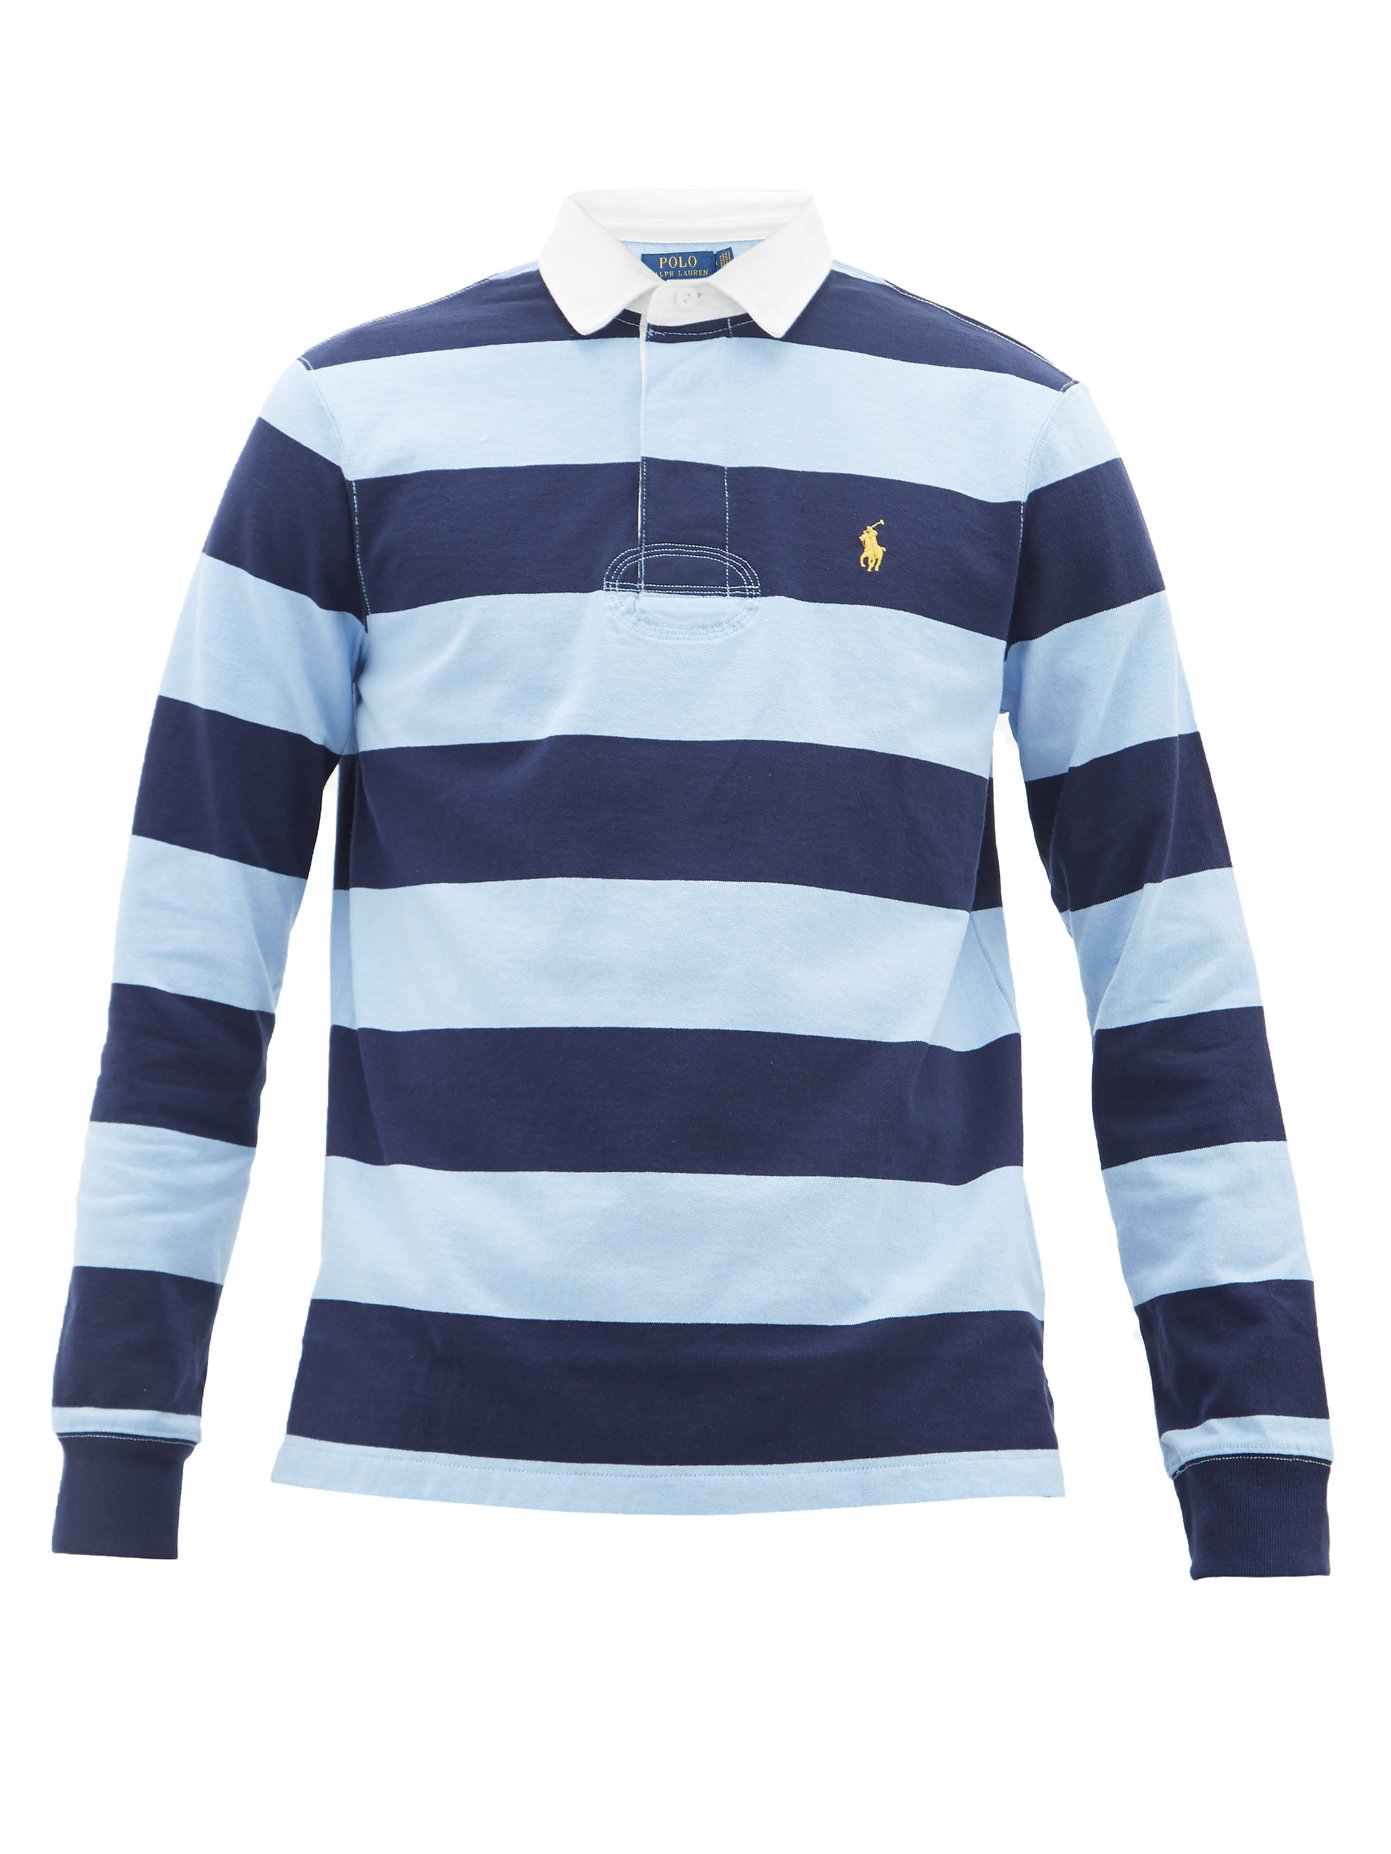 striped ralph lauren shirt